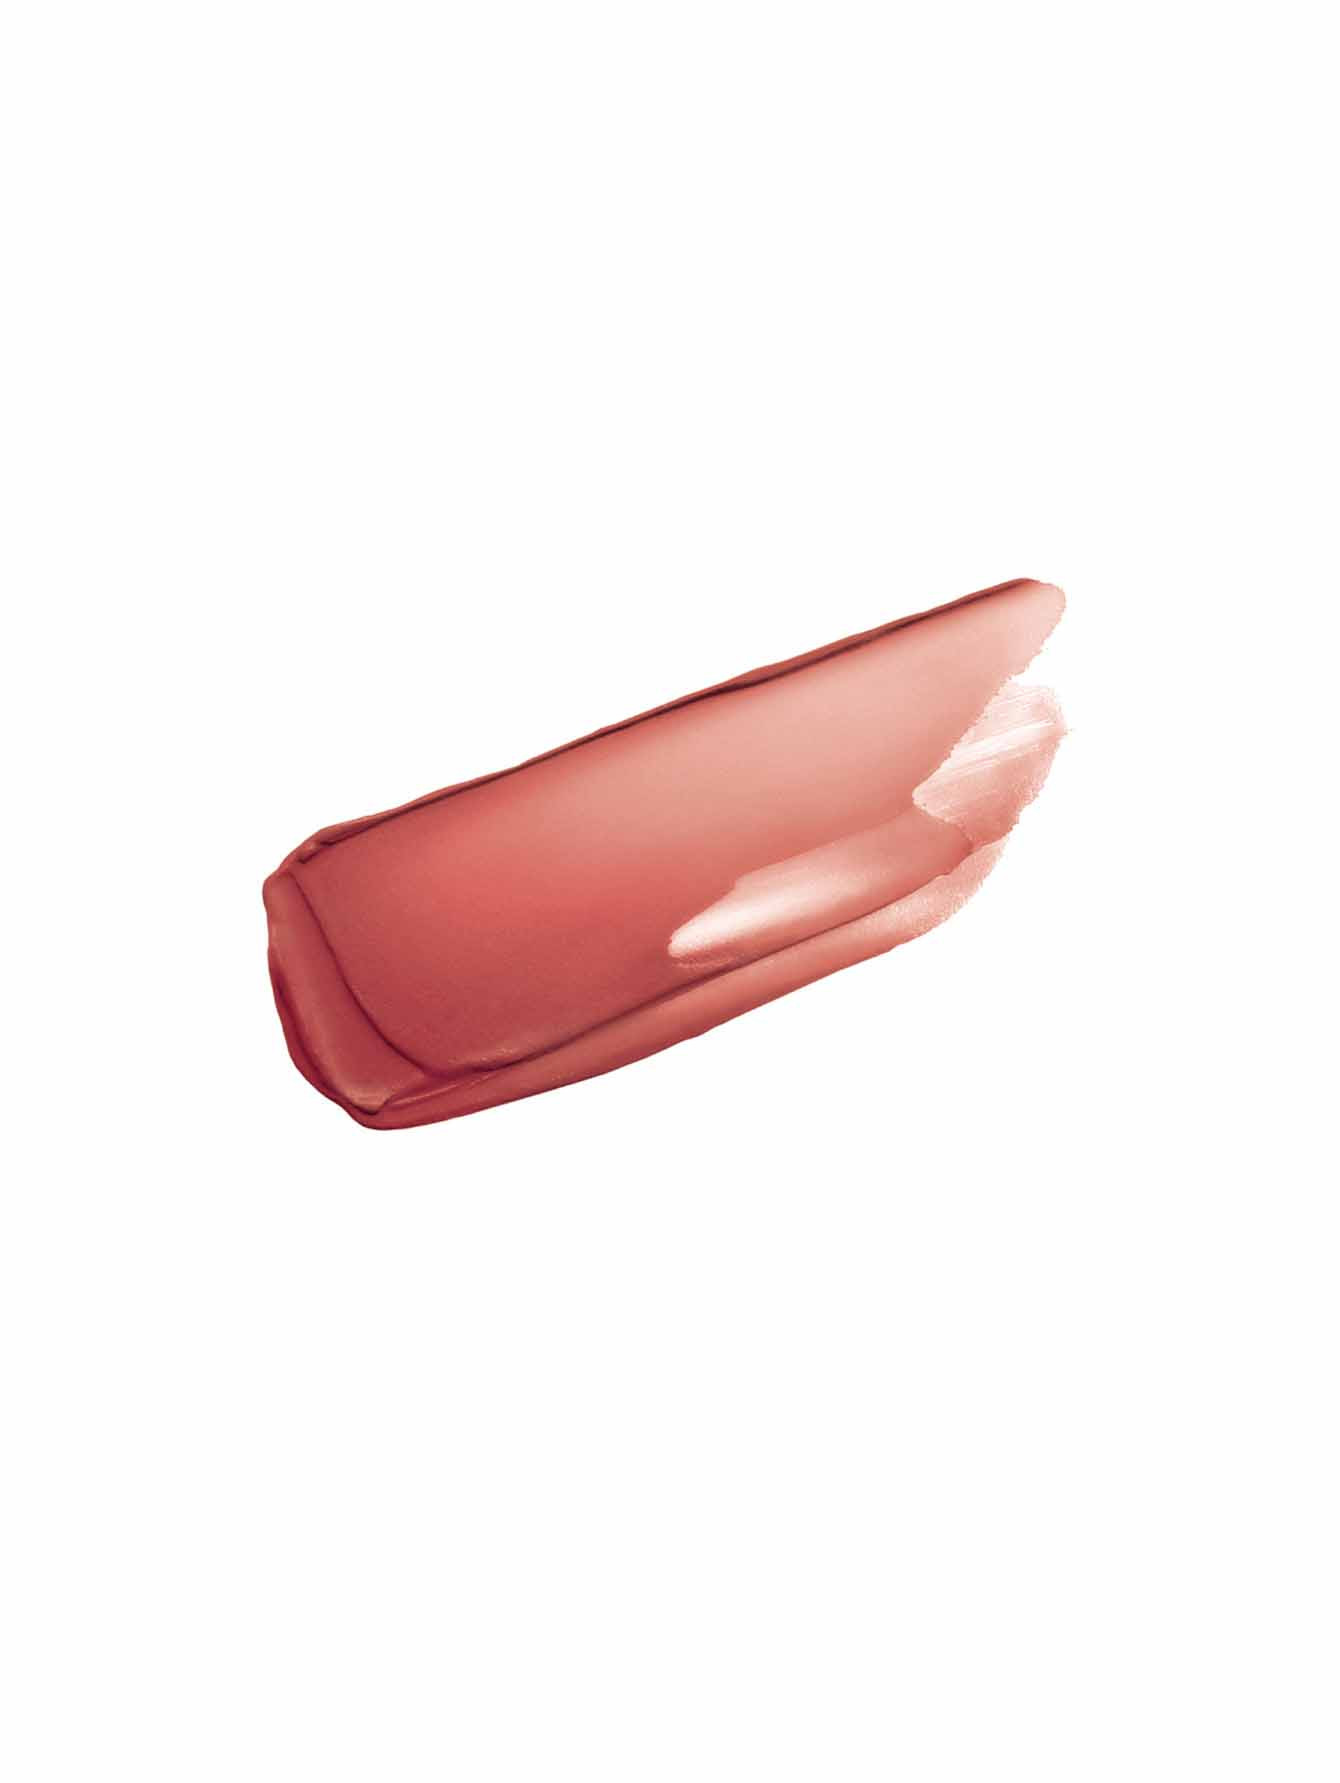 Le Rouge Sheer Velvet Легкая увлажняющая губная помада с мягким матовым финишем, без футляра - Обтравка1